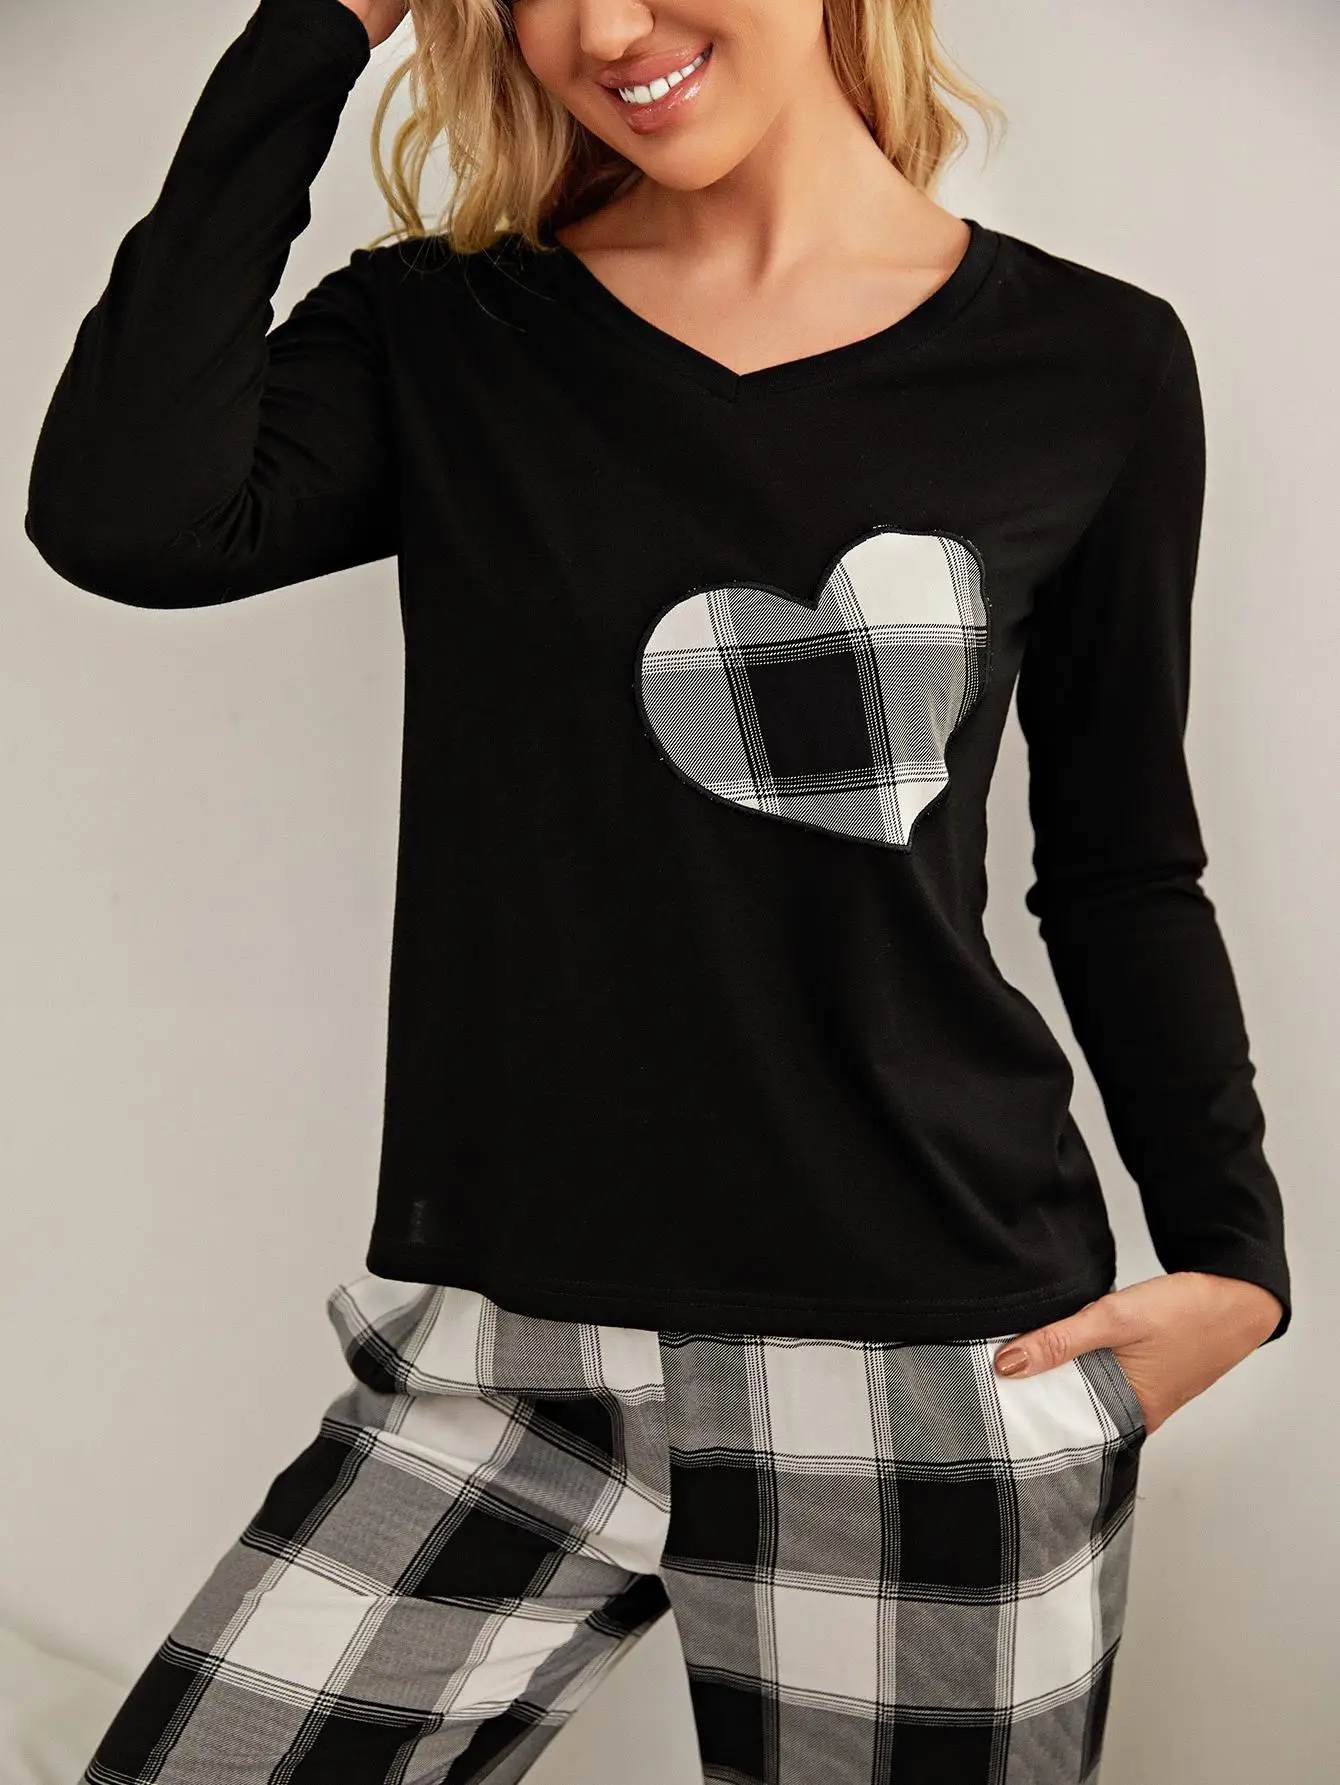 Женский пижамный комплект с принтом в виде сердца, топ с длинным рукавом и брюки с эластичной резинкой на талии, 2 предмета, пижамы в клетку, пижамы с V-образным вырезом, ткань Howear 3